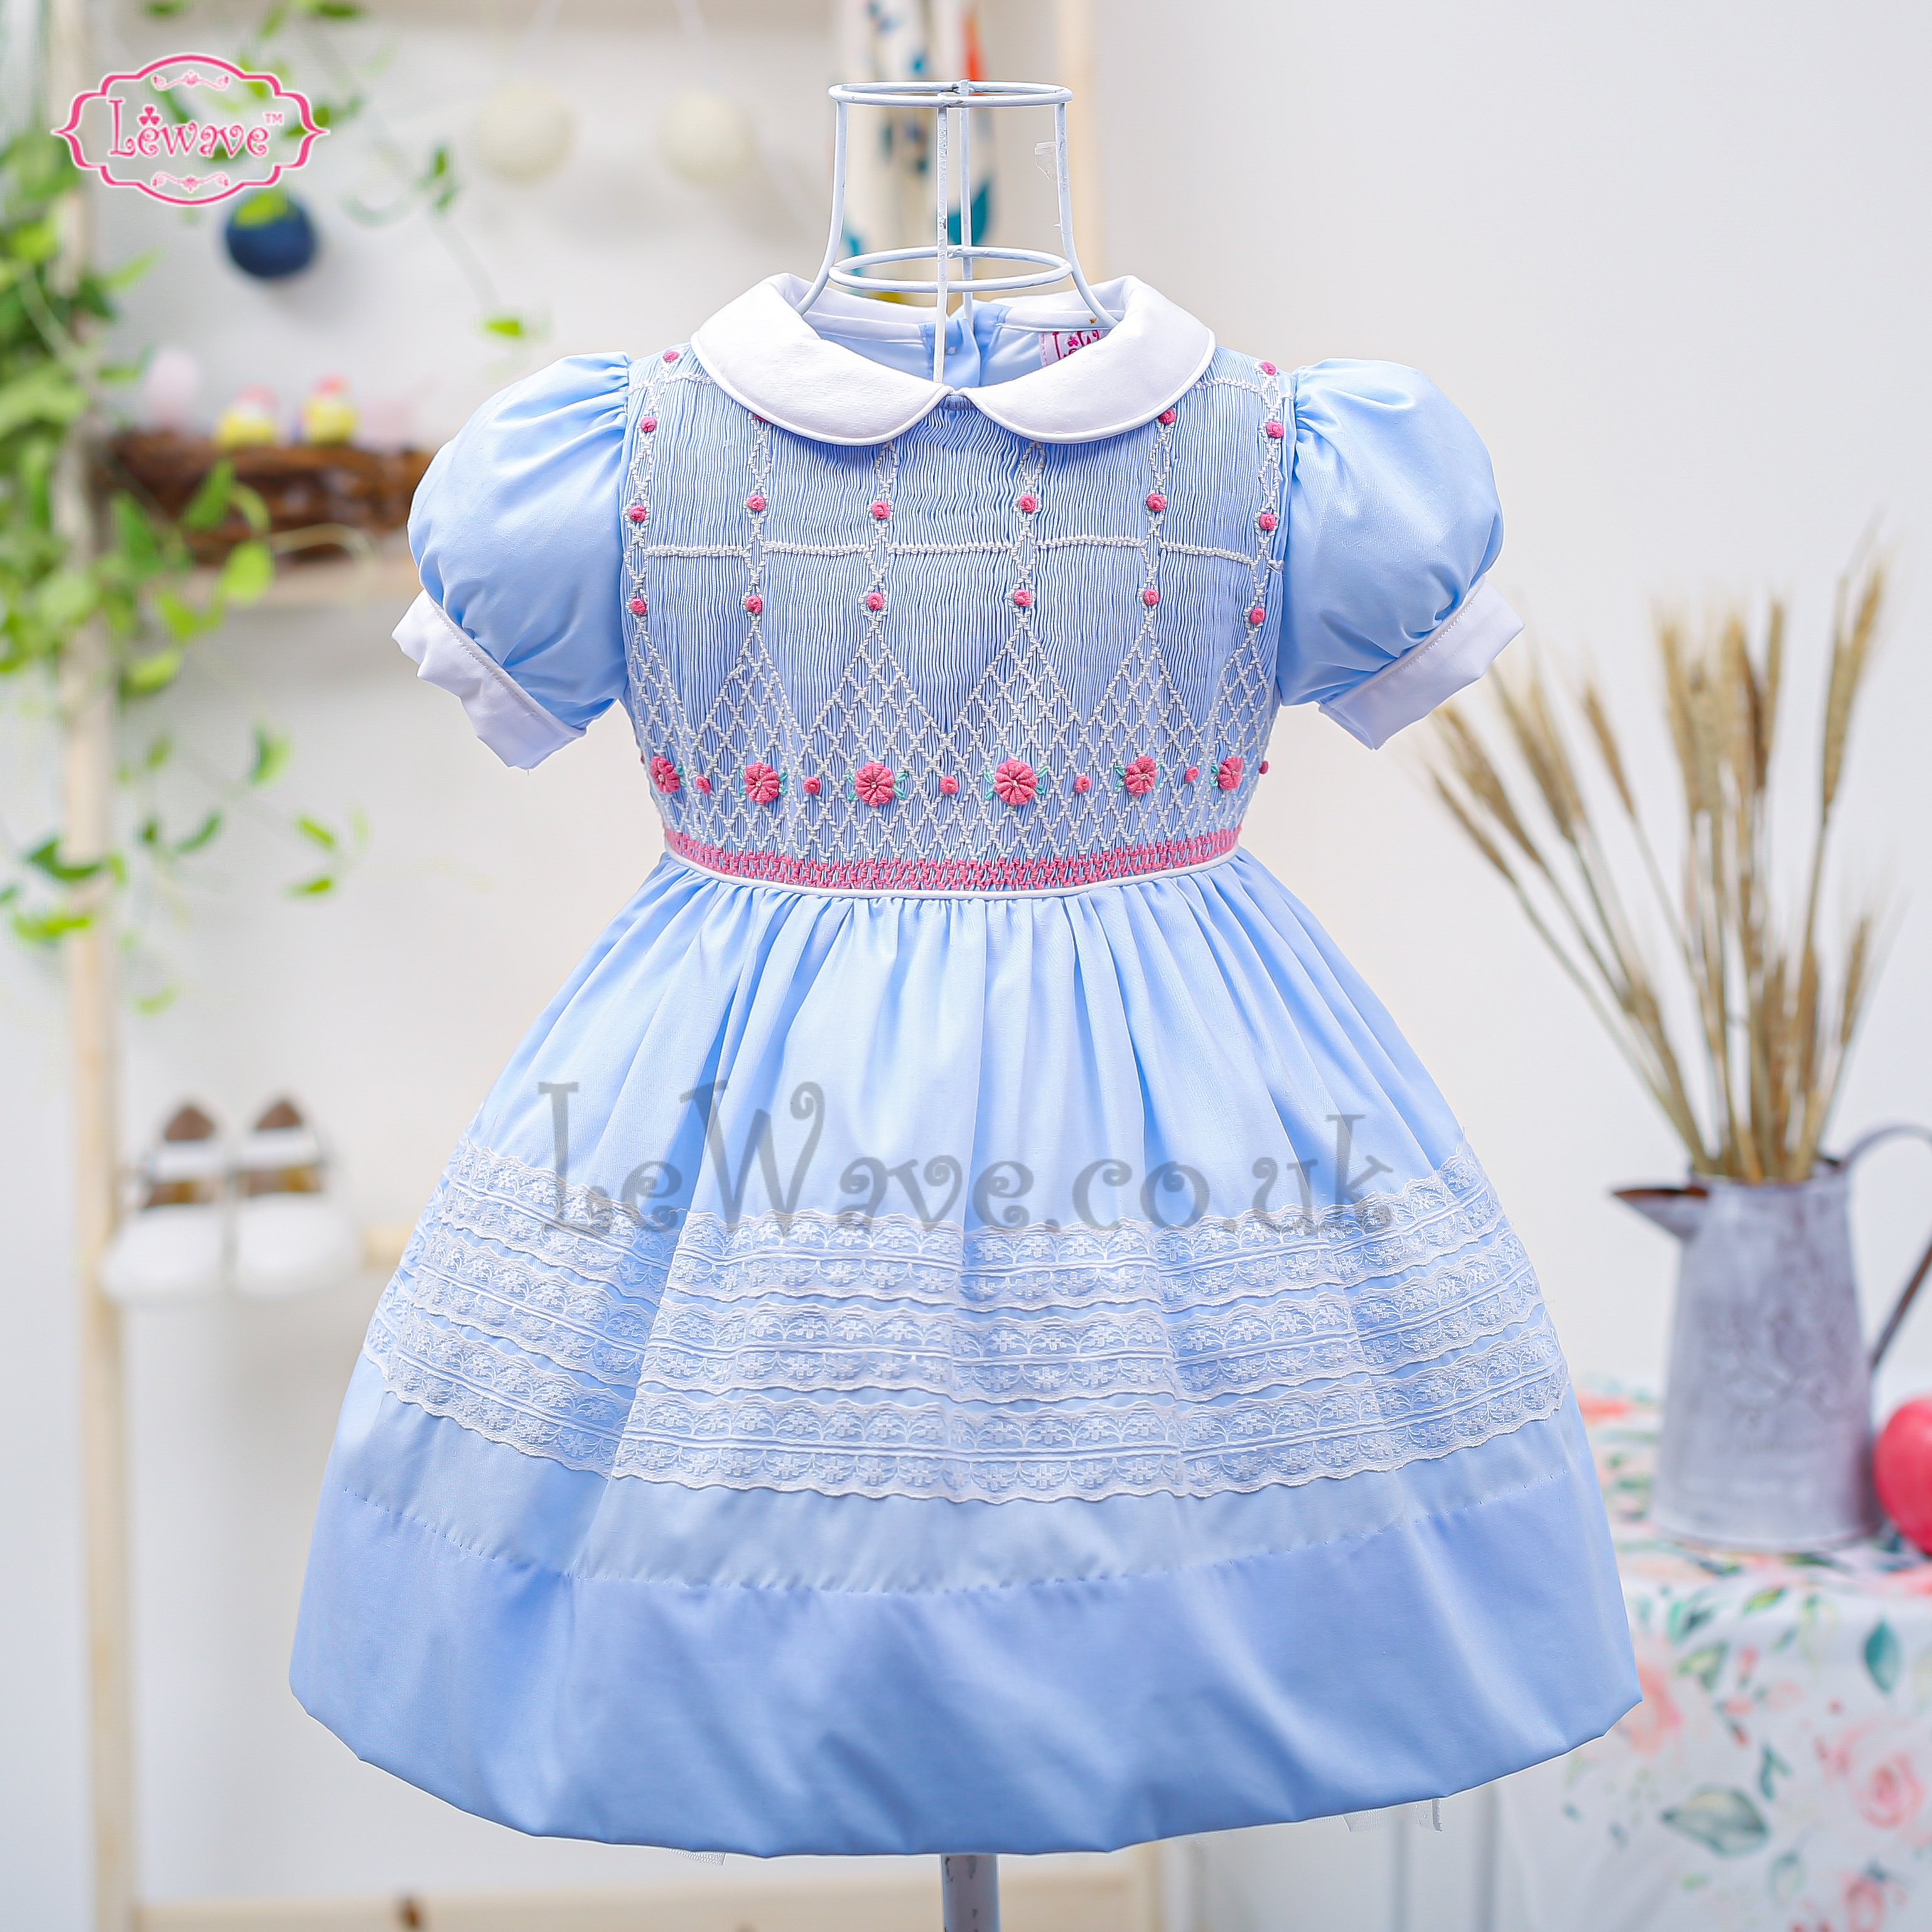 Lovely little girl blue smocked dress - LD 425